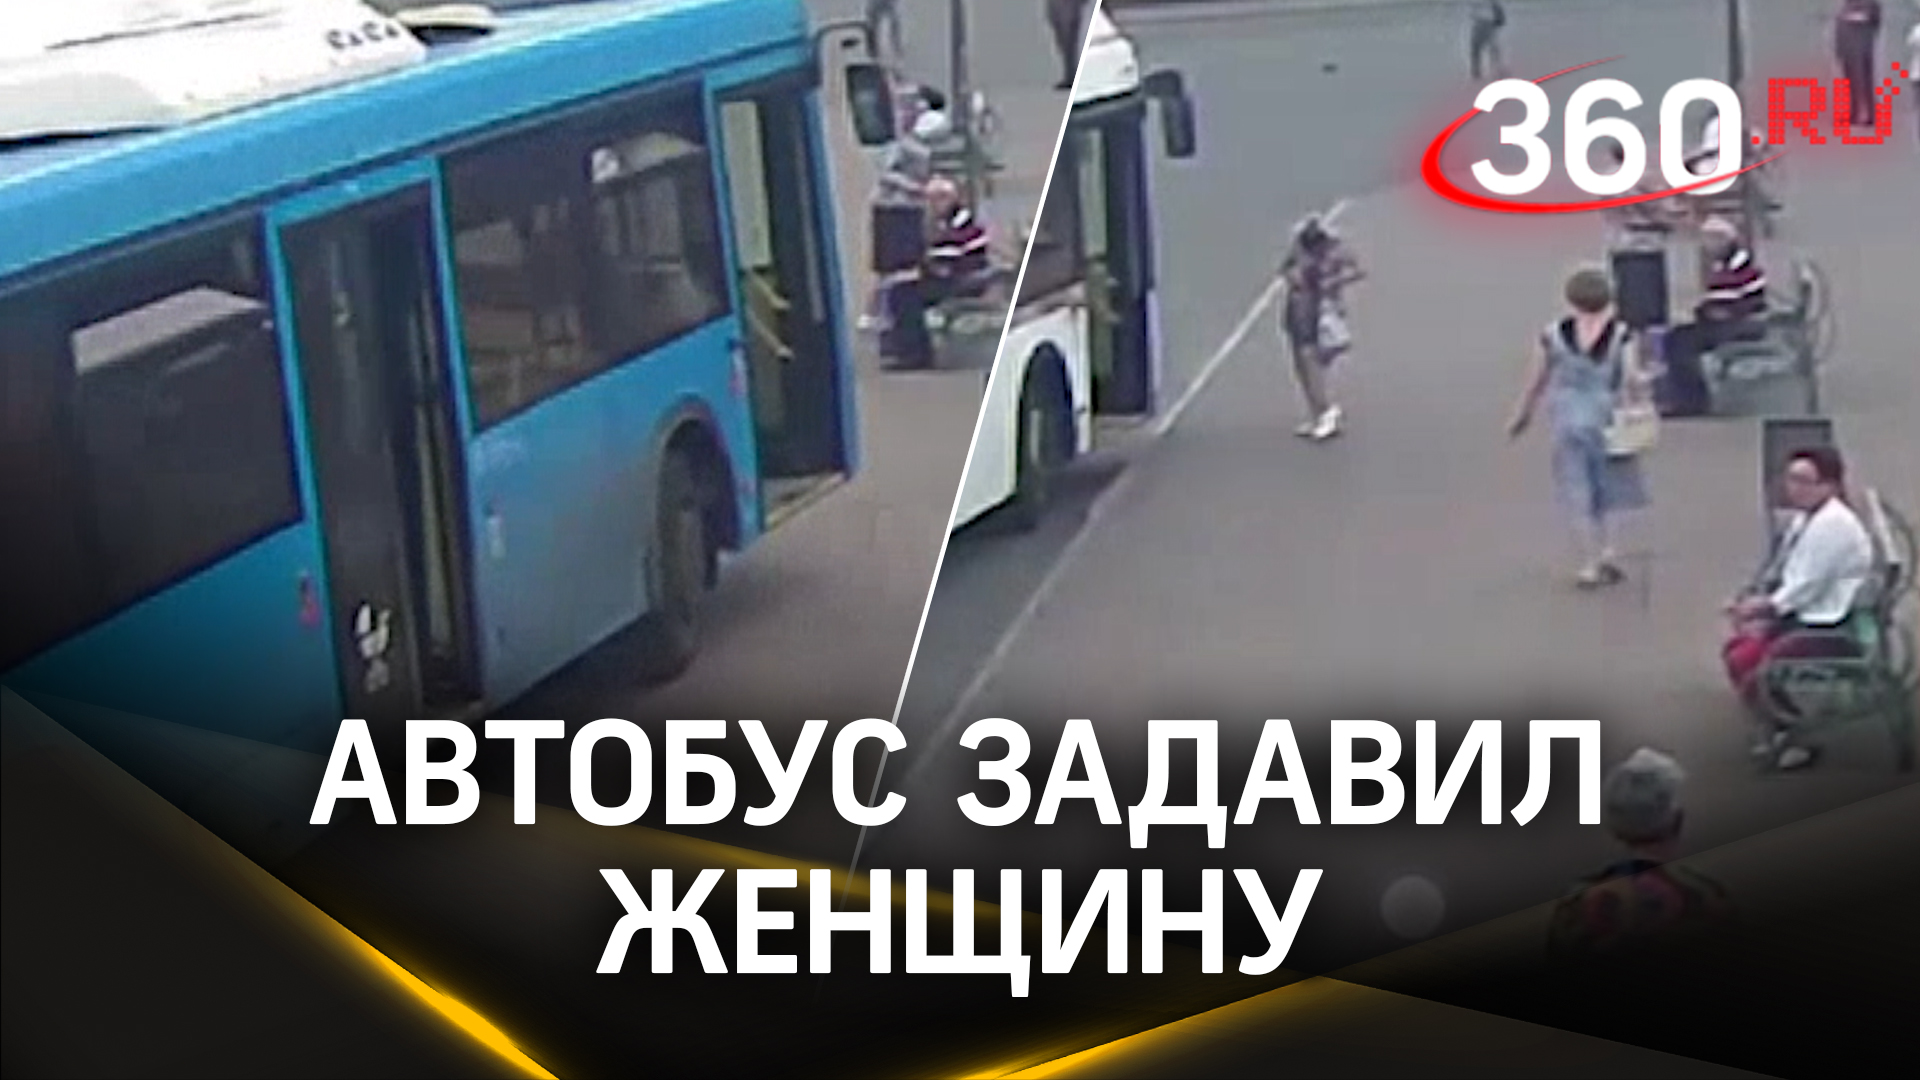 Видео: автобус давит женщину в Домодедово, водитель пытался избежать аварии